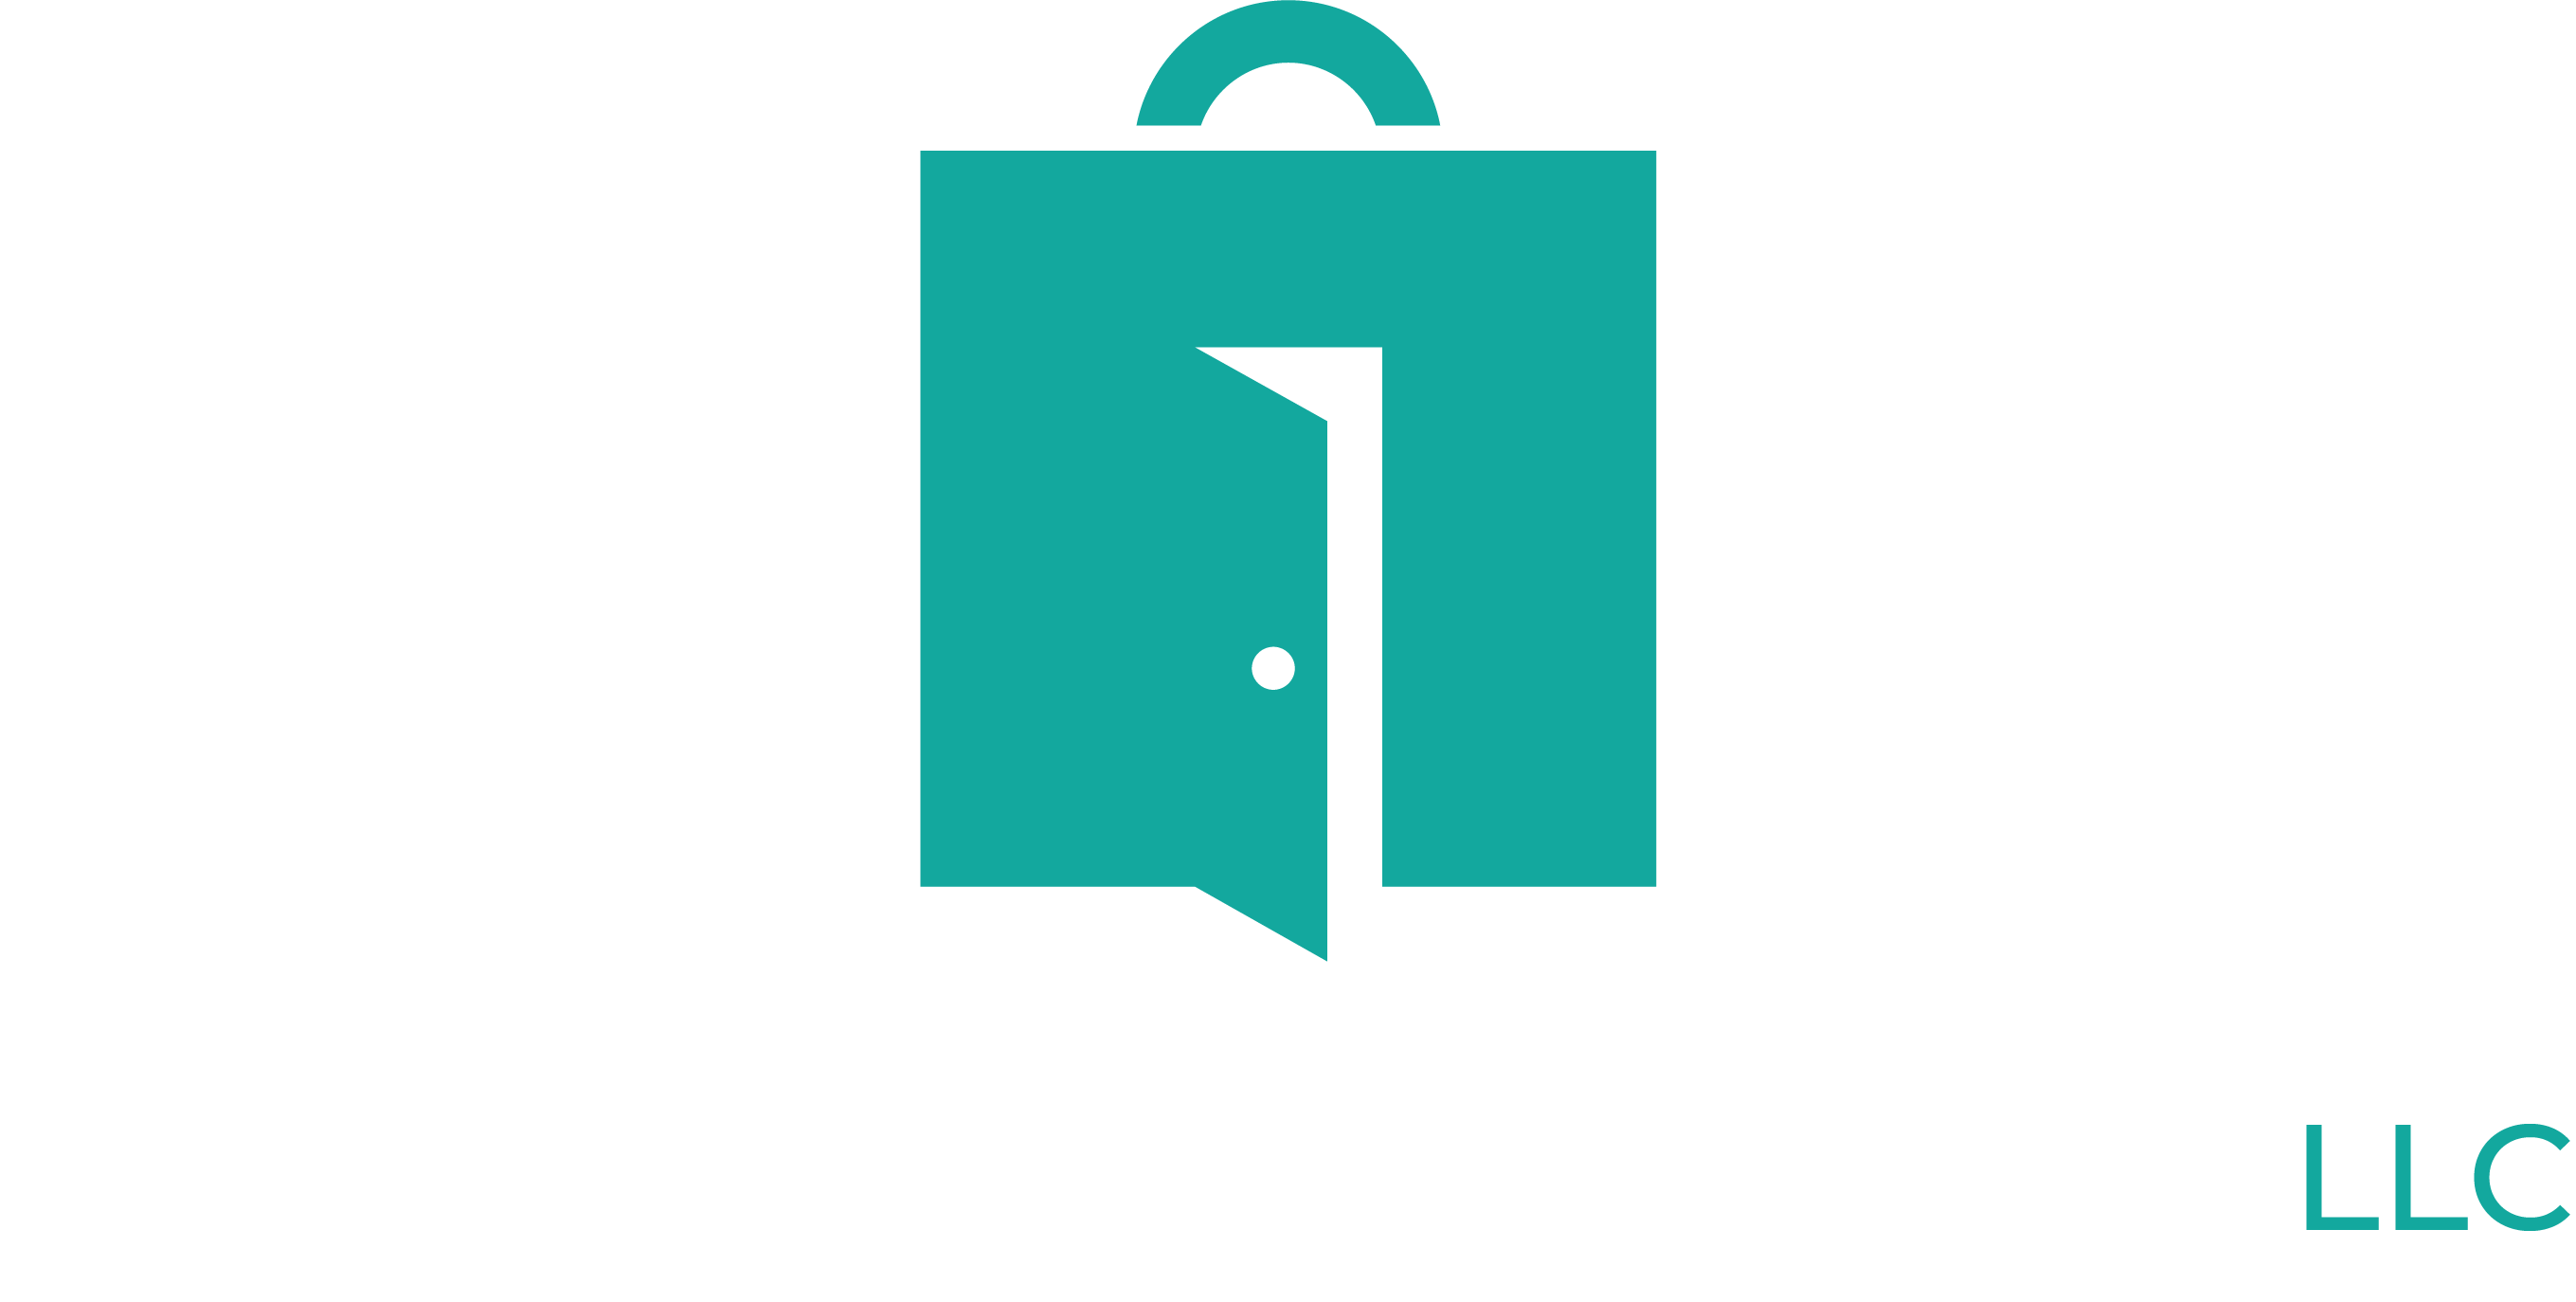 Direct 2 Door LLC